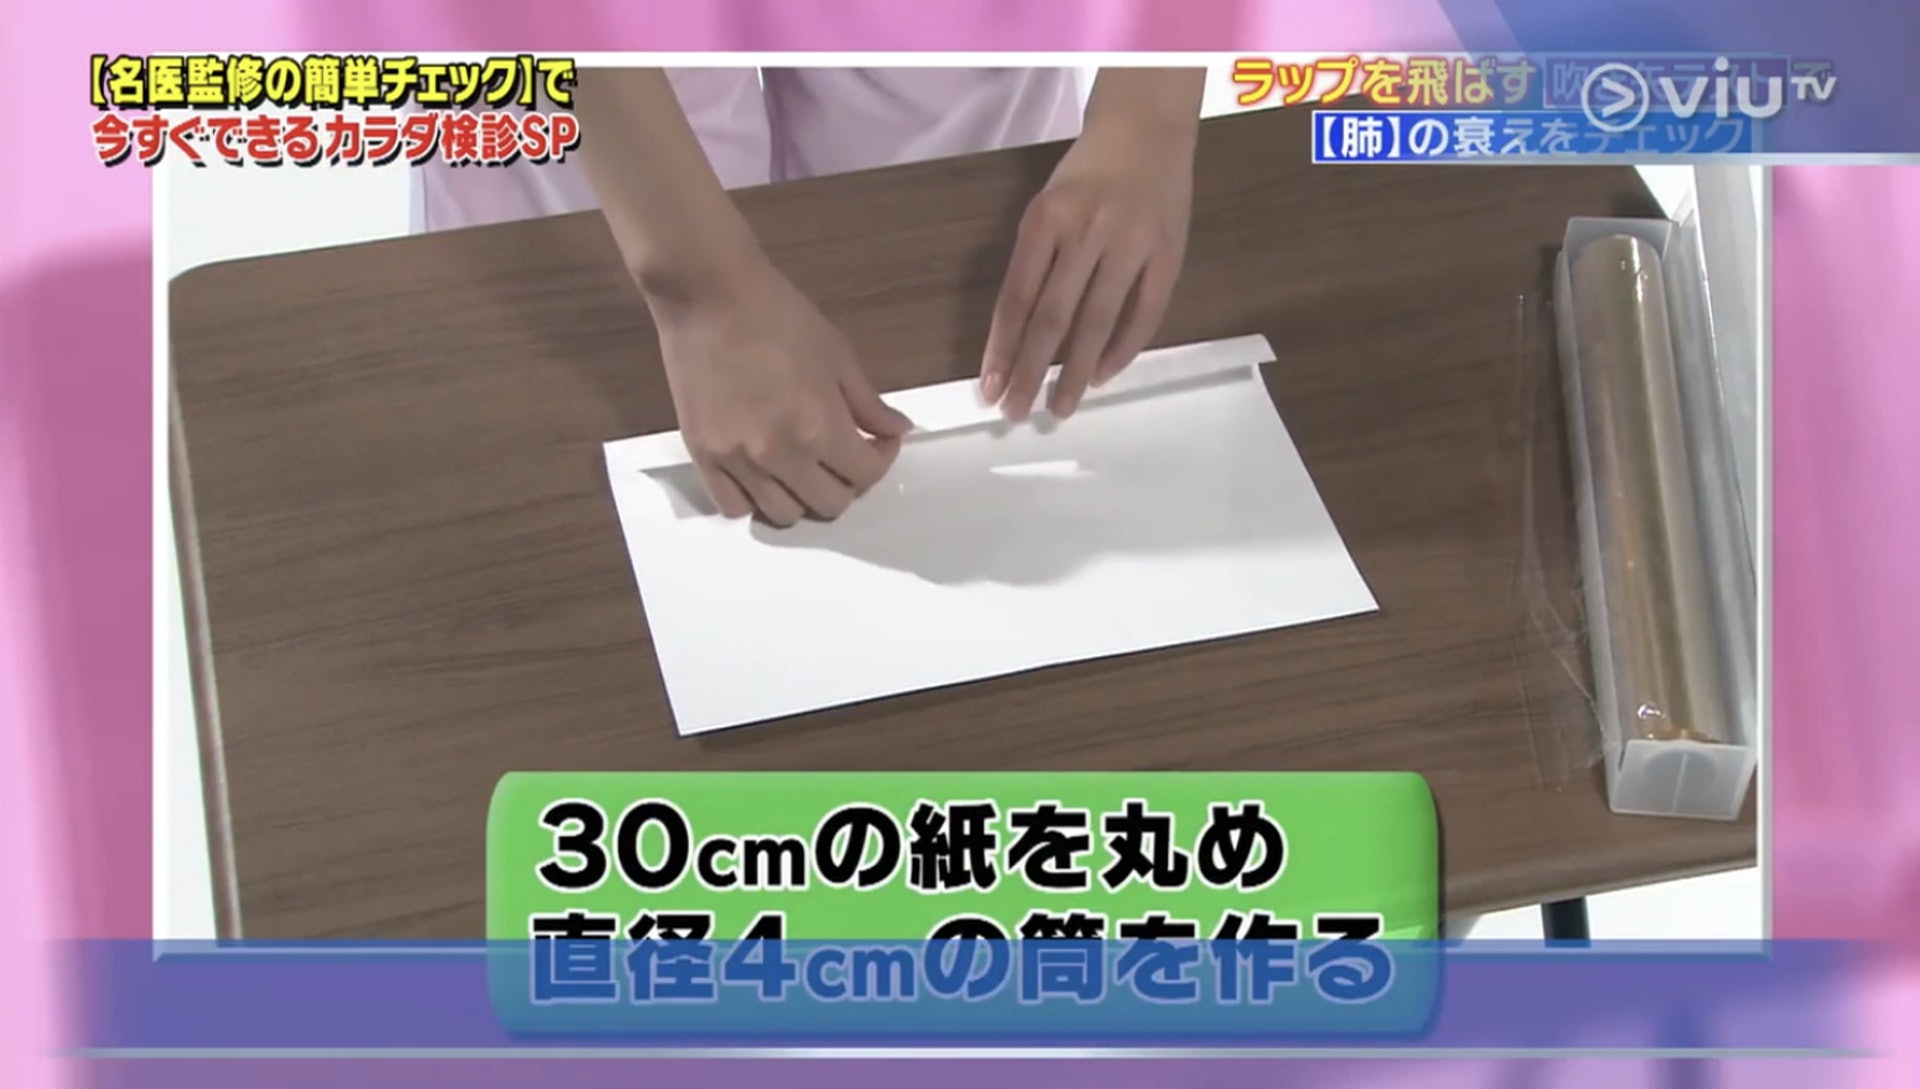 先把紙張卷成直徑約4厘米的紙筒（Viu TV《恐怖醫學》影片截圖）